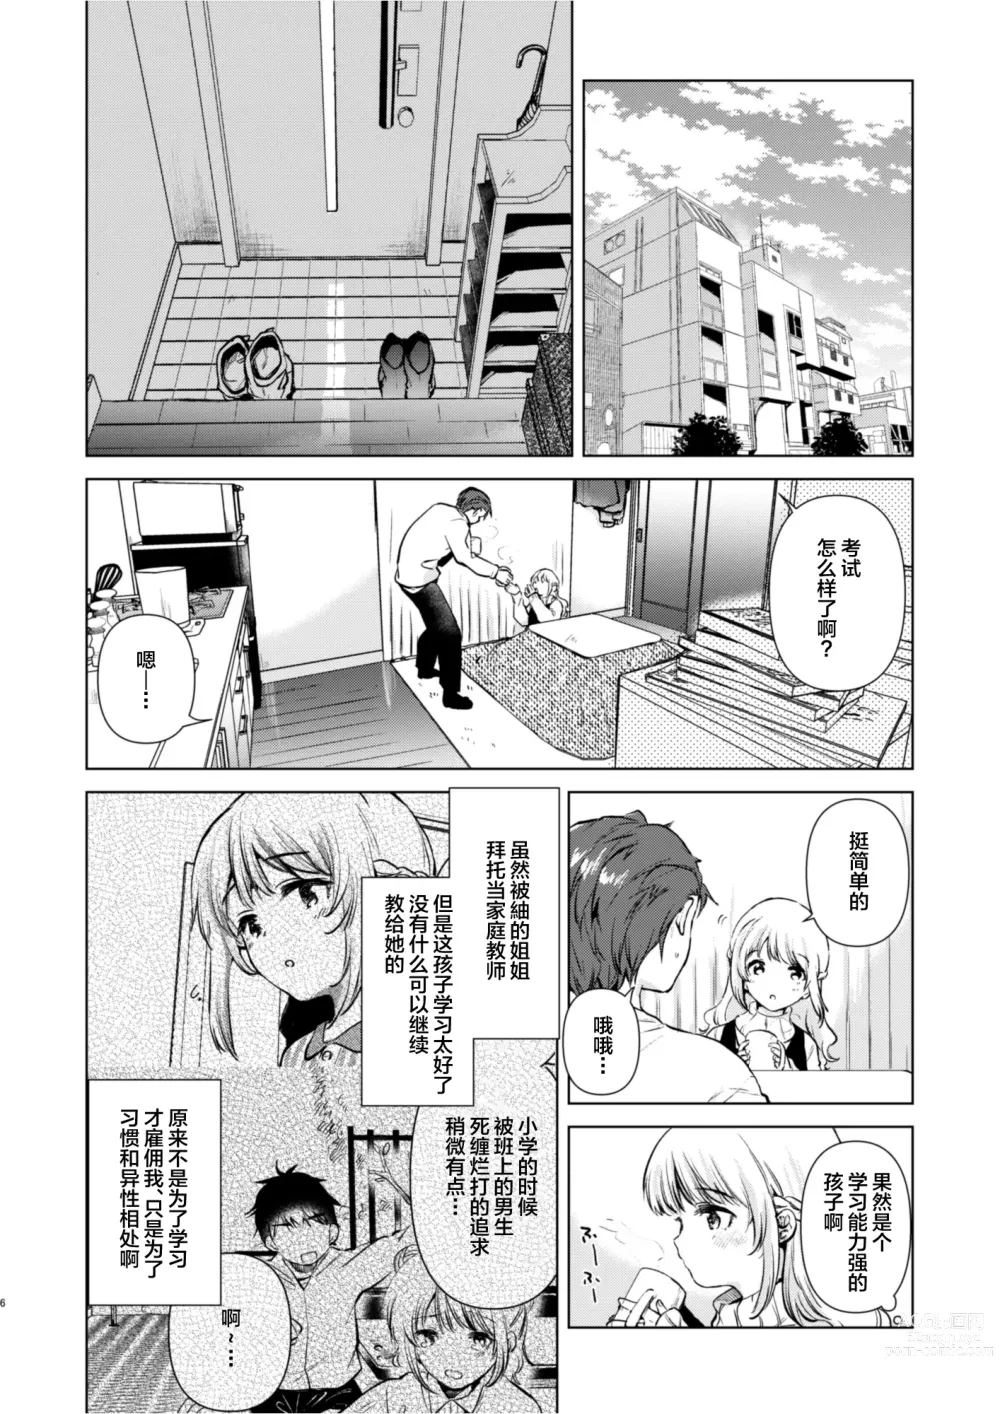 Page 5 of doujinshi Tsumugi-chan no Seichouki